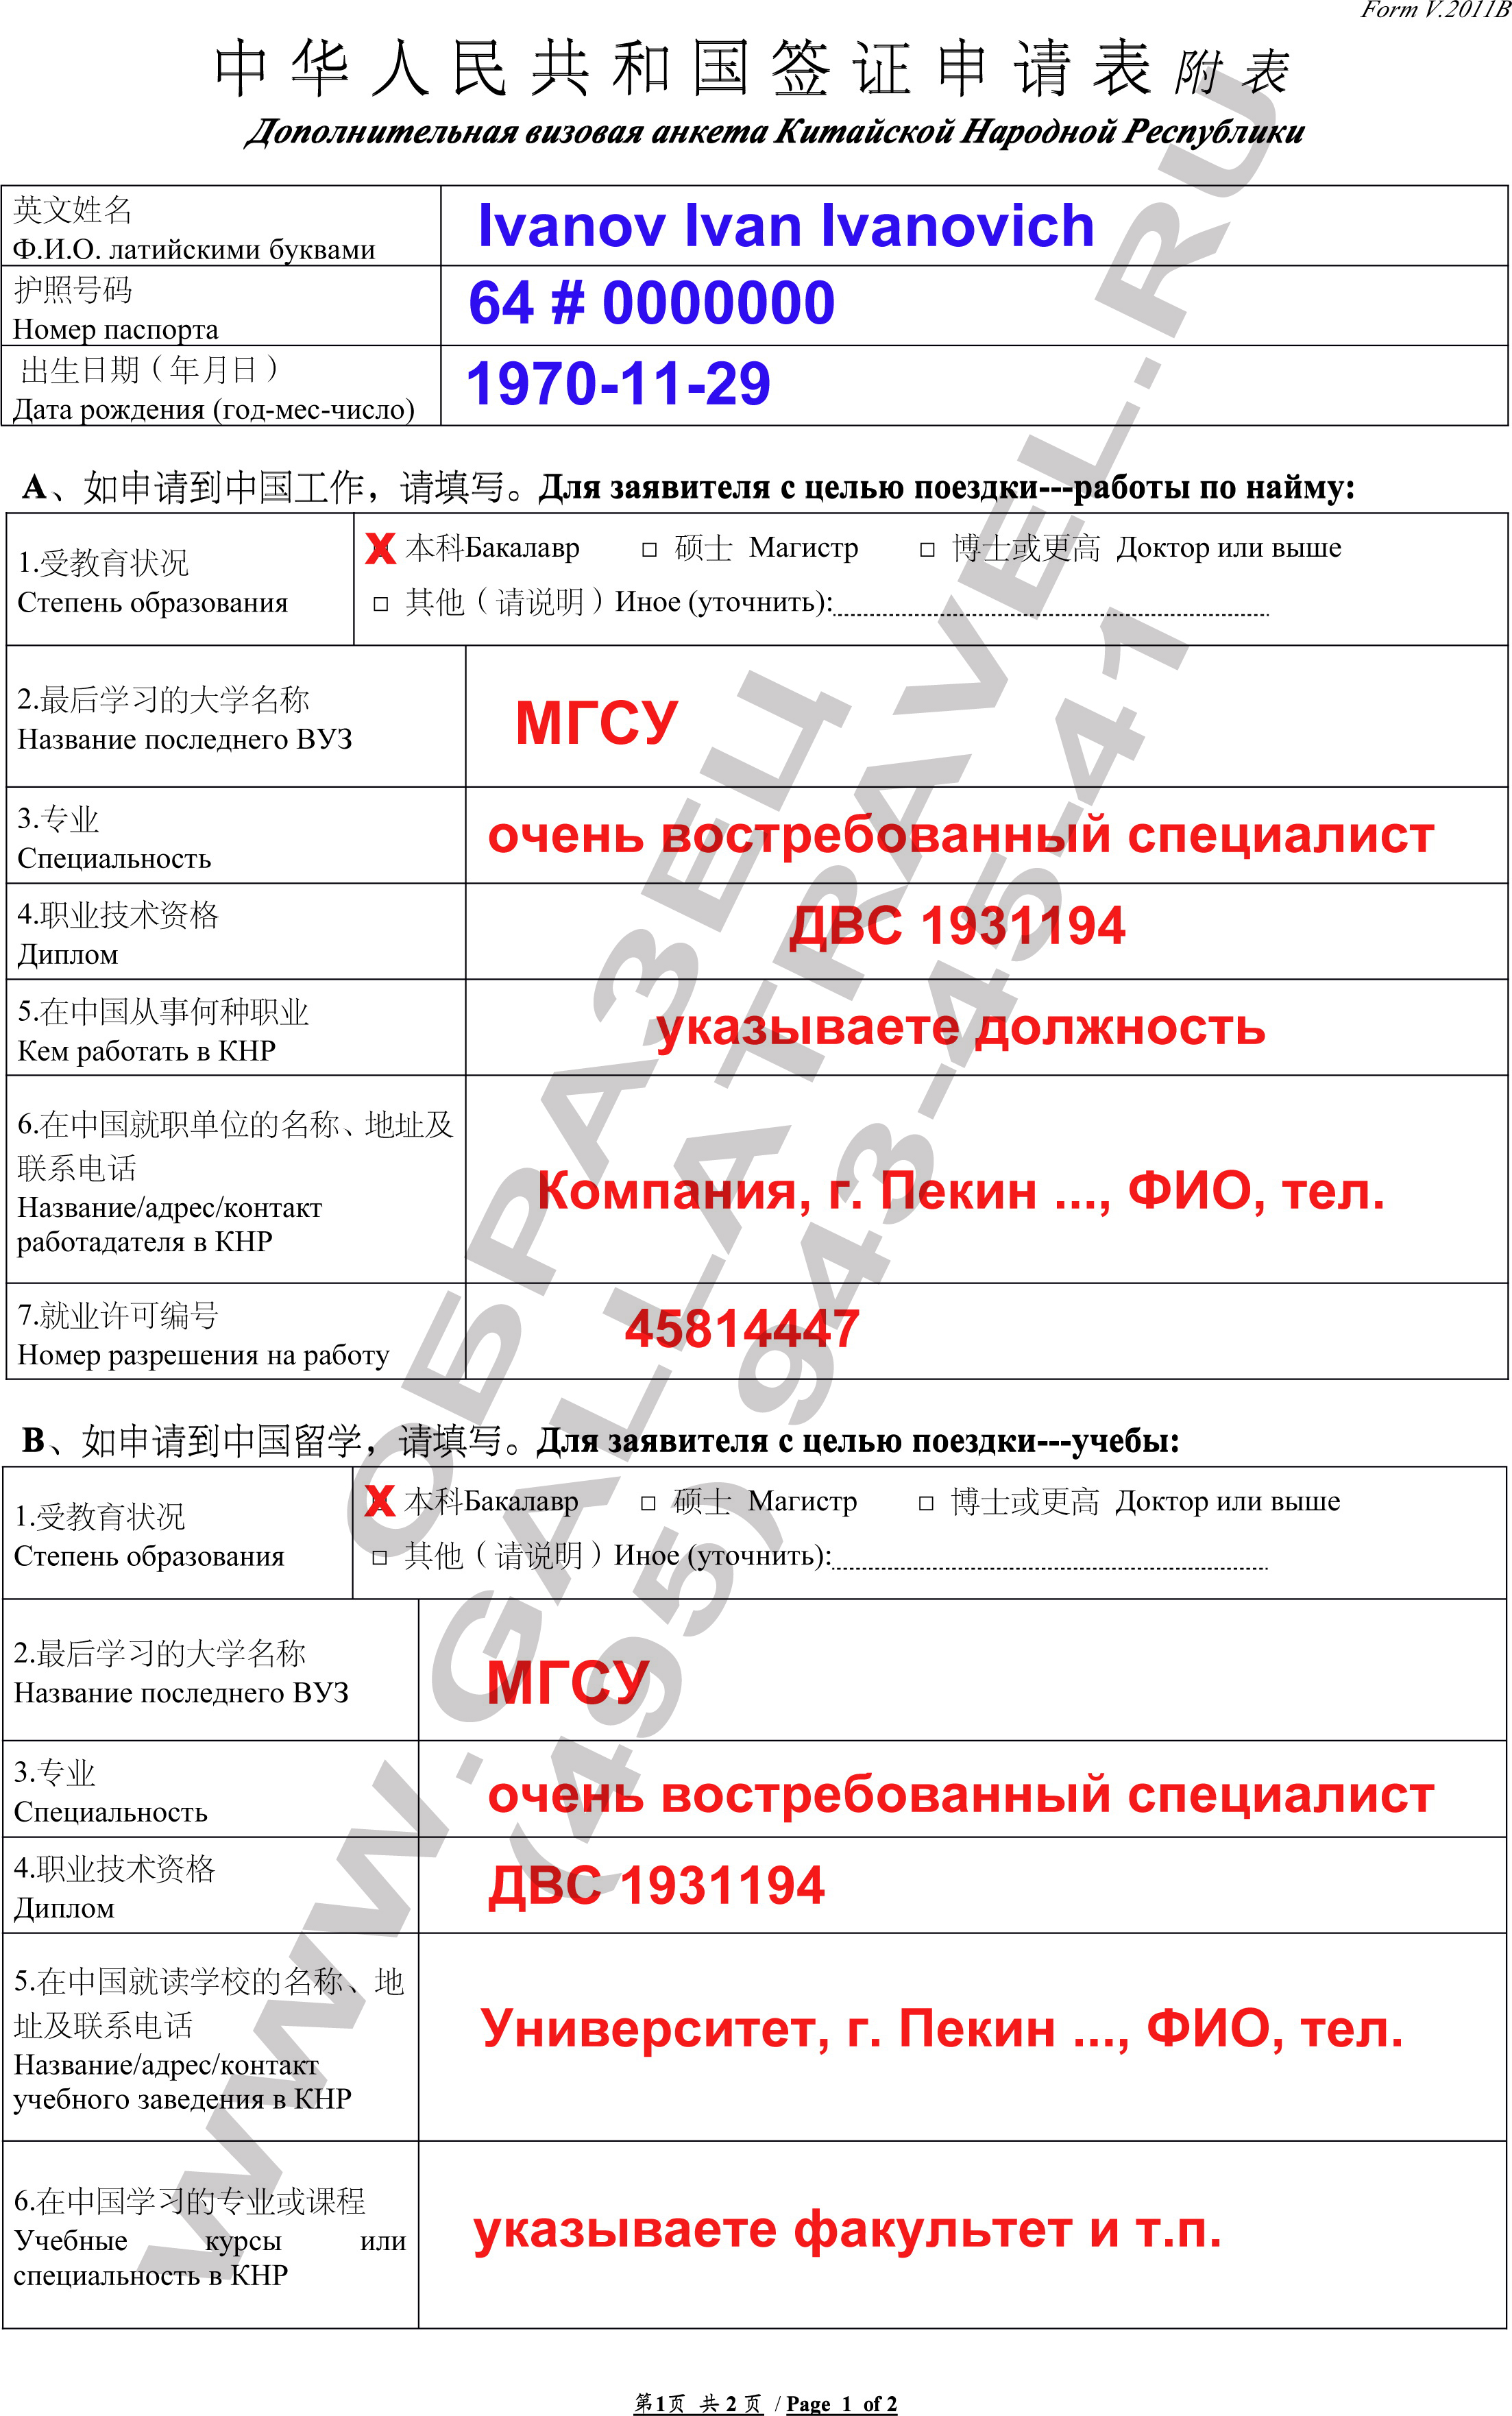 образец анкеты на загранпаспорт украины